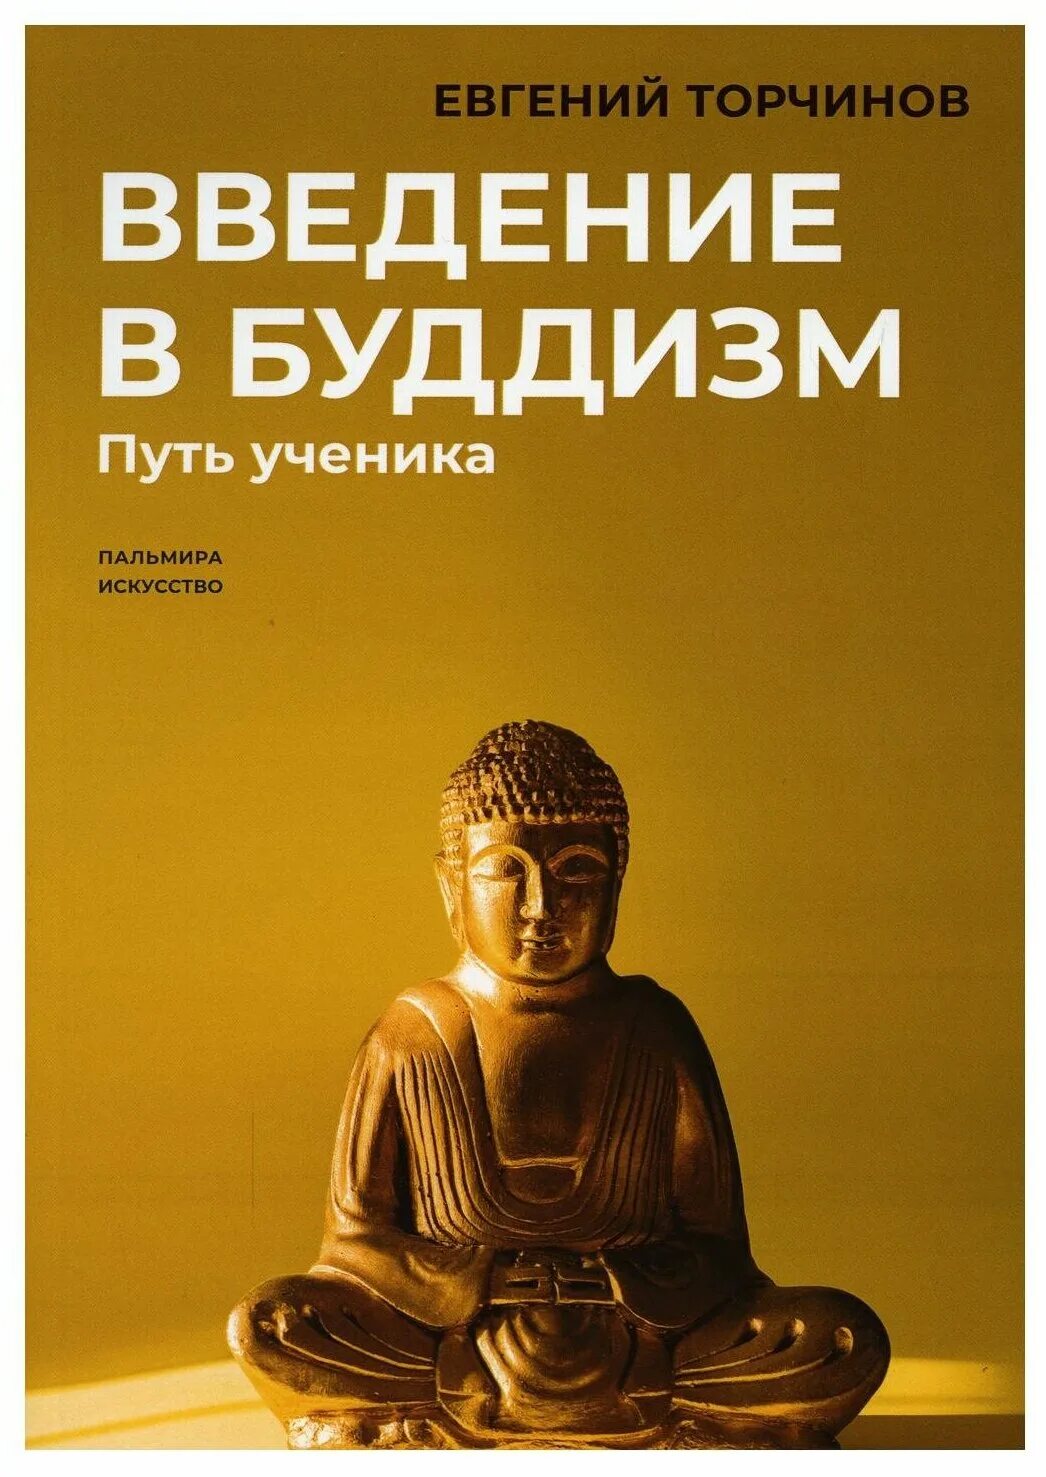 Путь ученика книга. Торчинов путь ученика. Введение в буддизм. Торчинов Введение в буддизм.